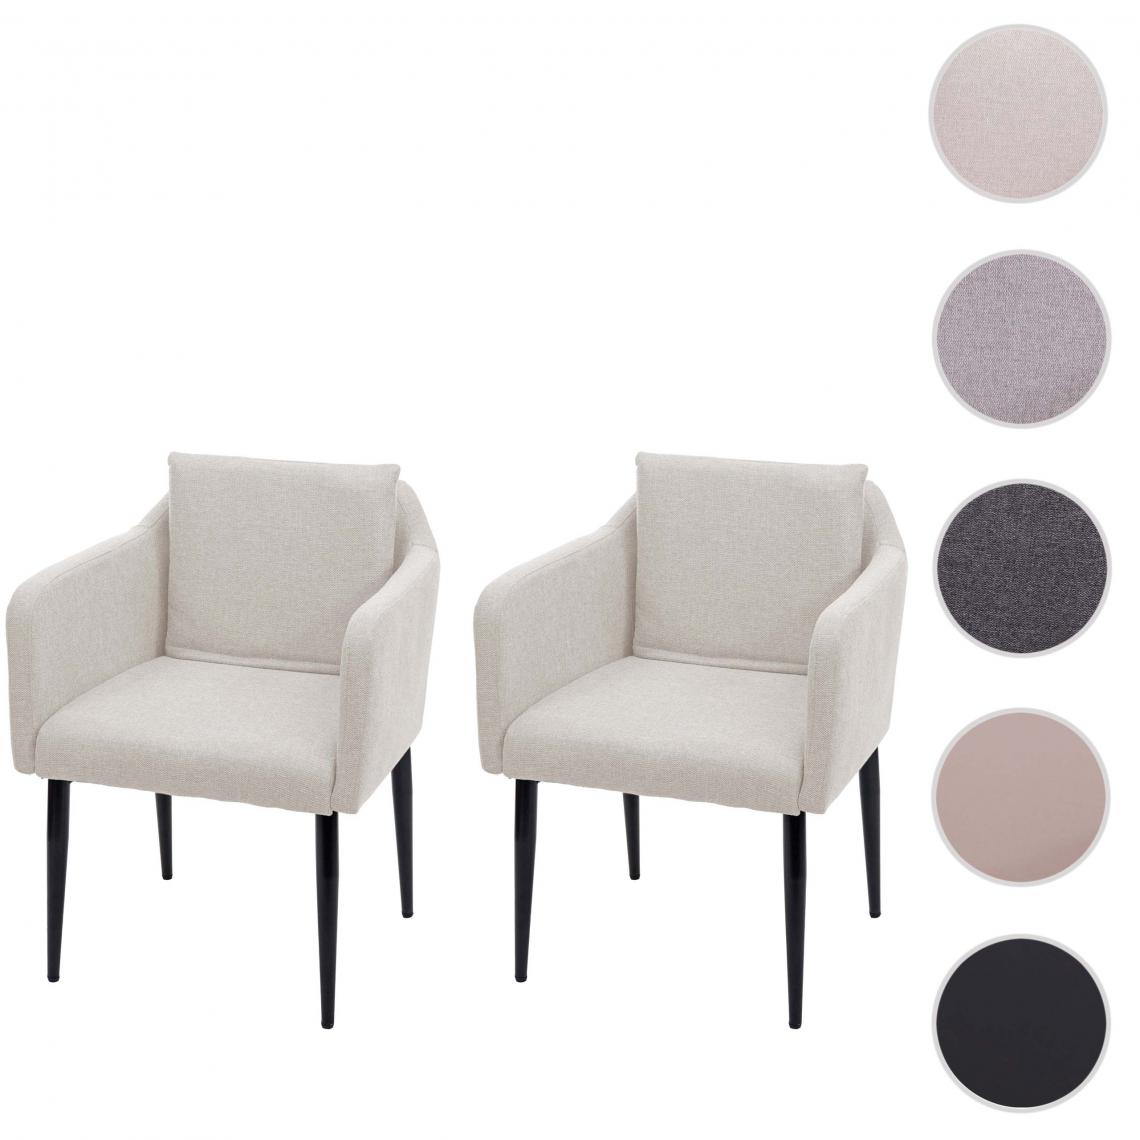 Mendler - 2x Chaise de salle à manger HWC-H93, chaise de cuisine chaise longue ~ tissu/textile crème-beige - Chaises